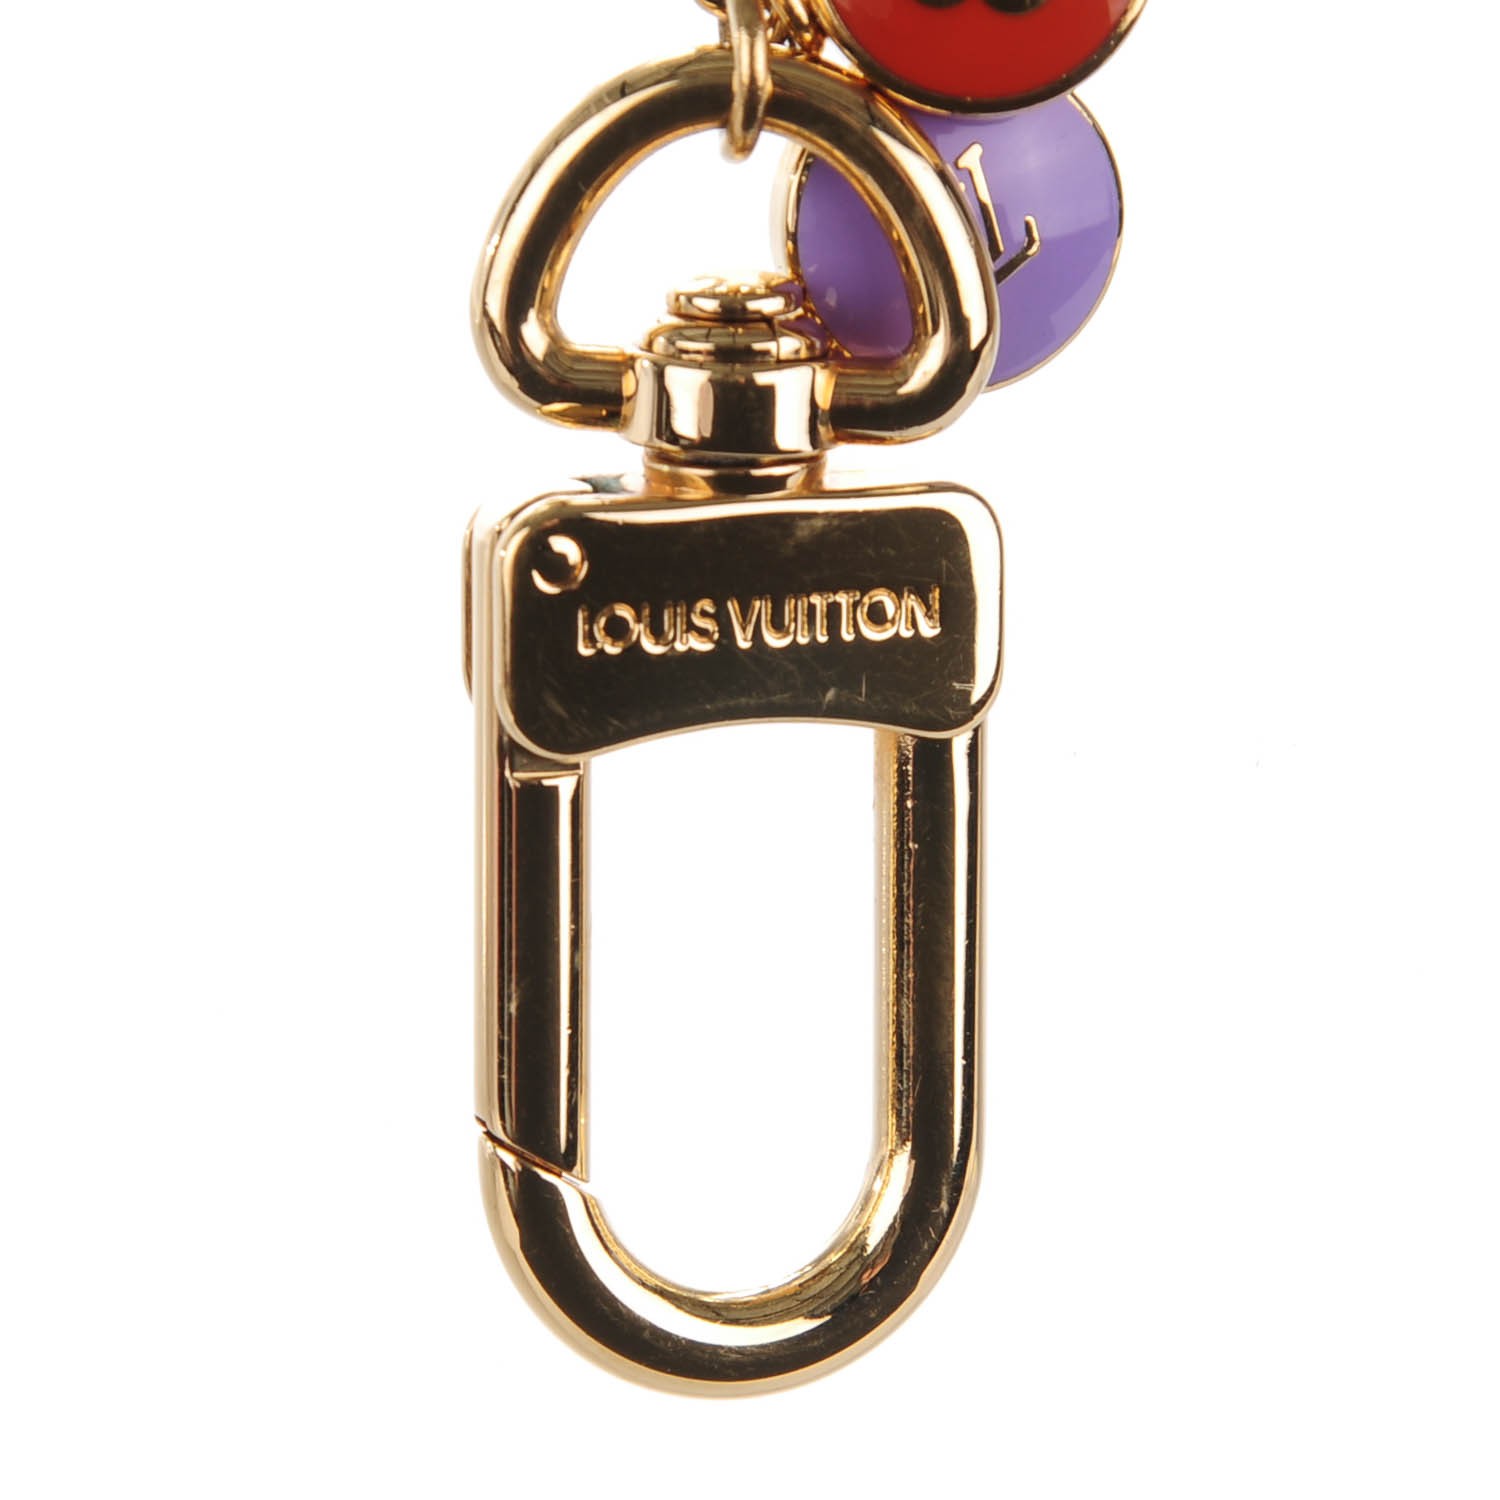 LOUIS VUITTON Pastilles Key Chain Bag Charm Multicolor 148772